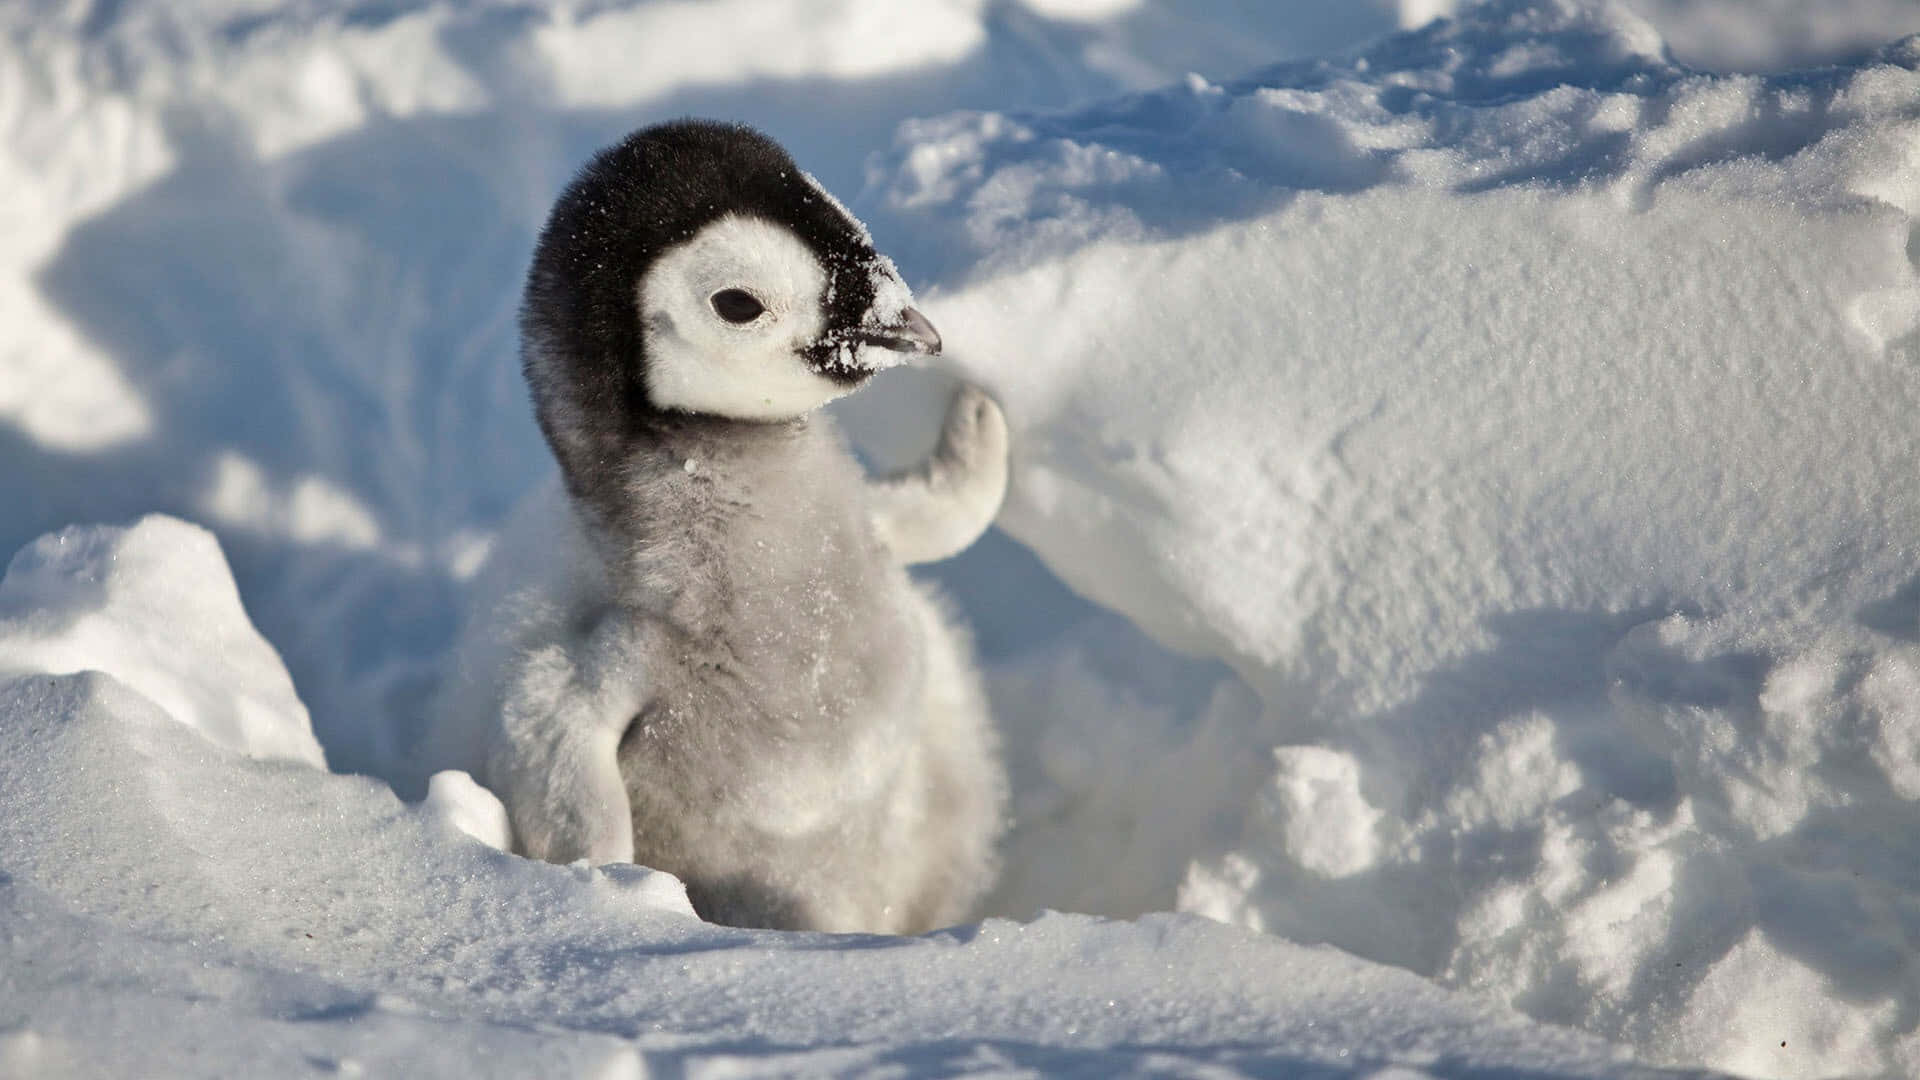 Schneesonnenlichtsüßes Pinguinbild